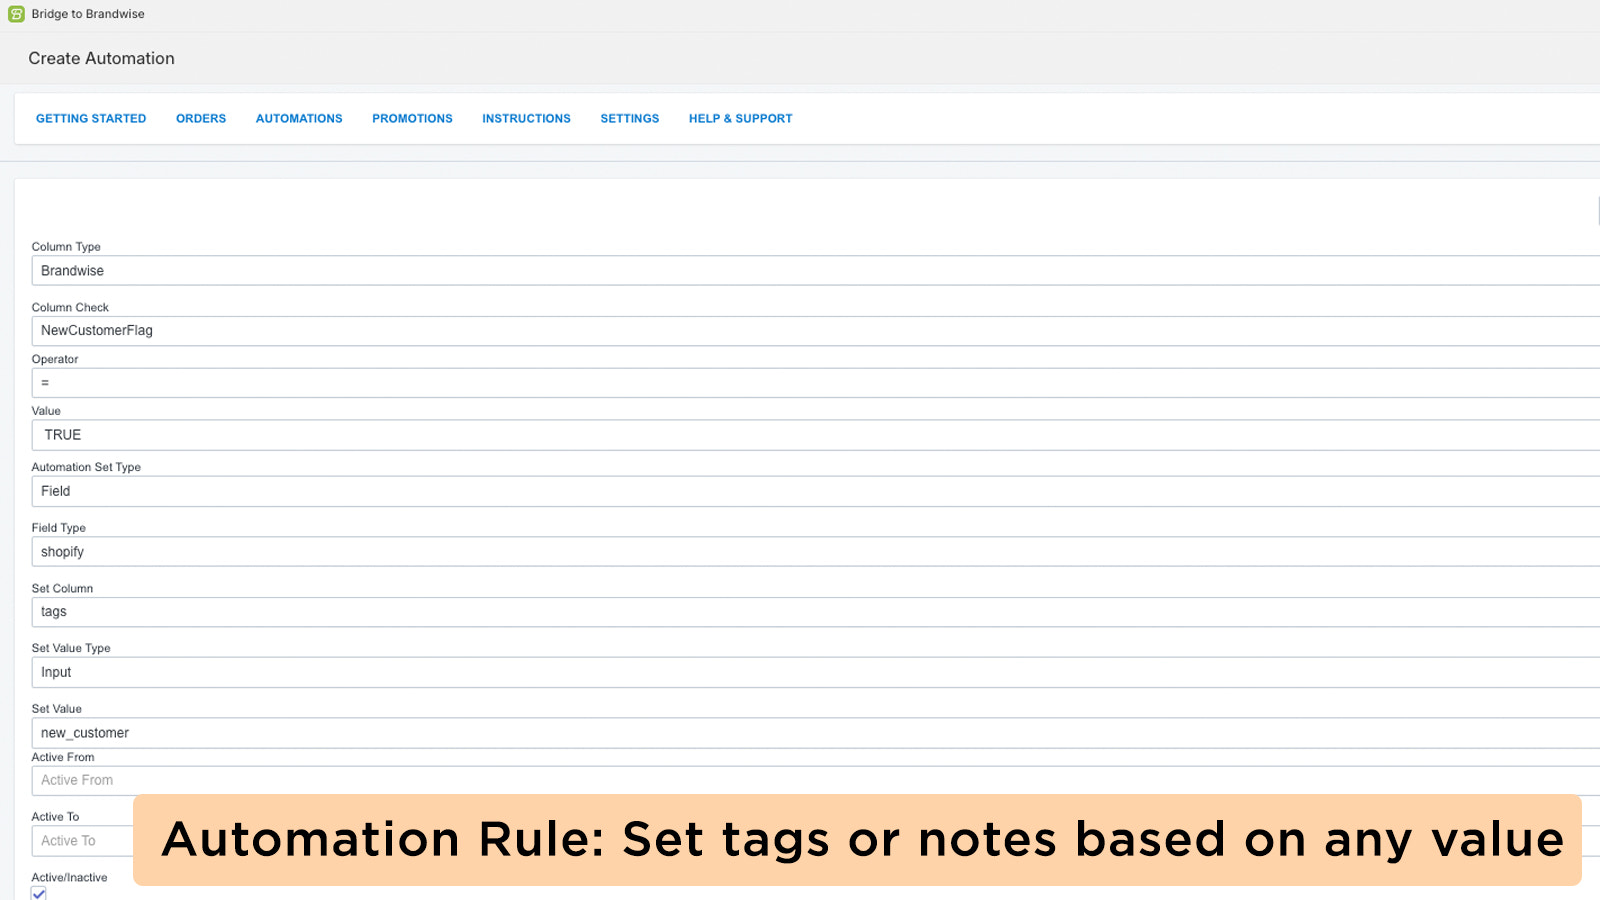 Bestellungen mit Tags oder Notizen basierend auf Brandwise-Datei importieren